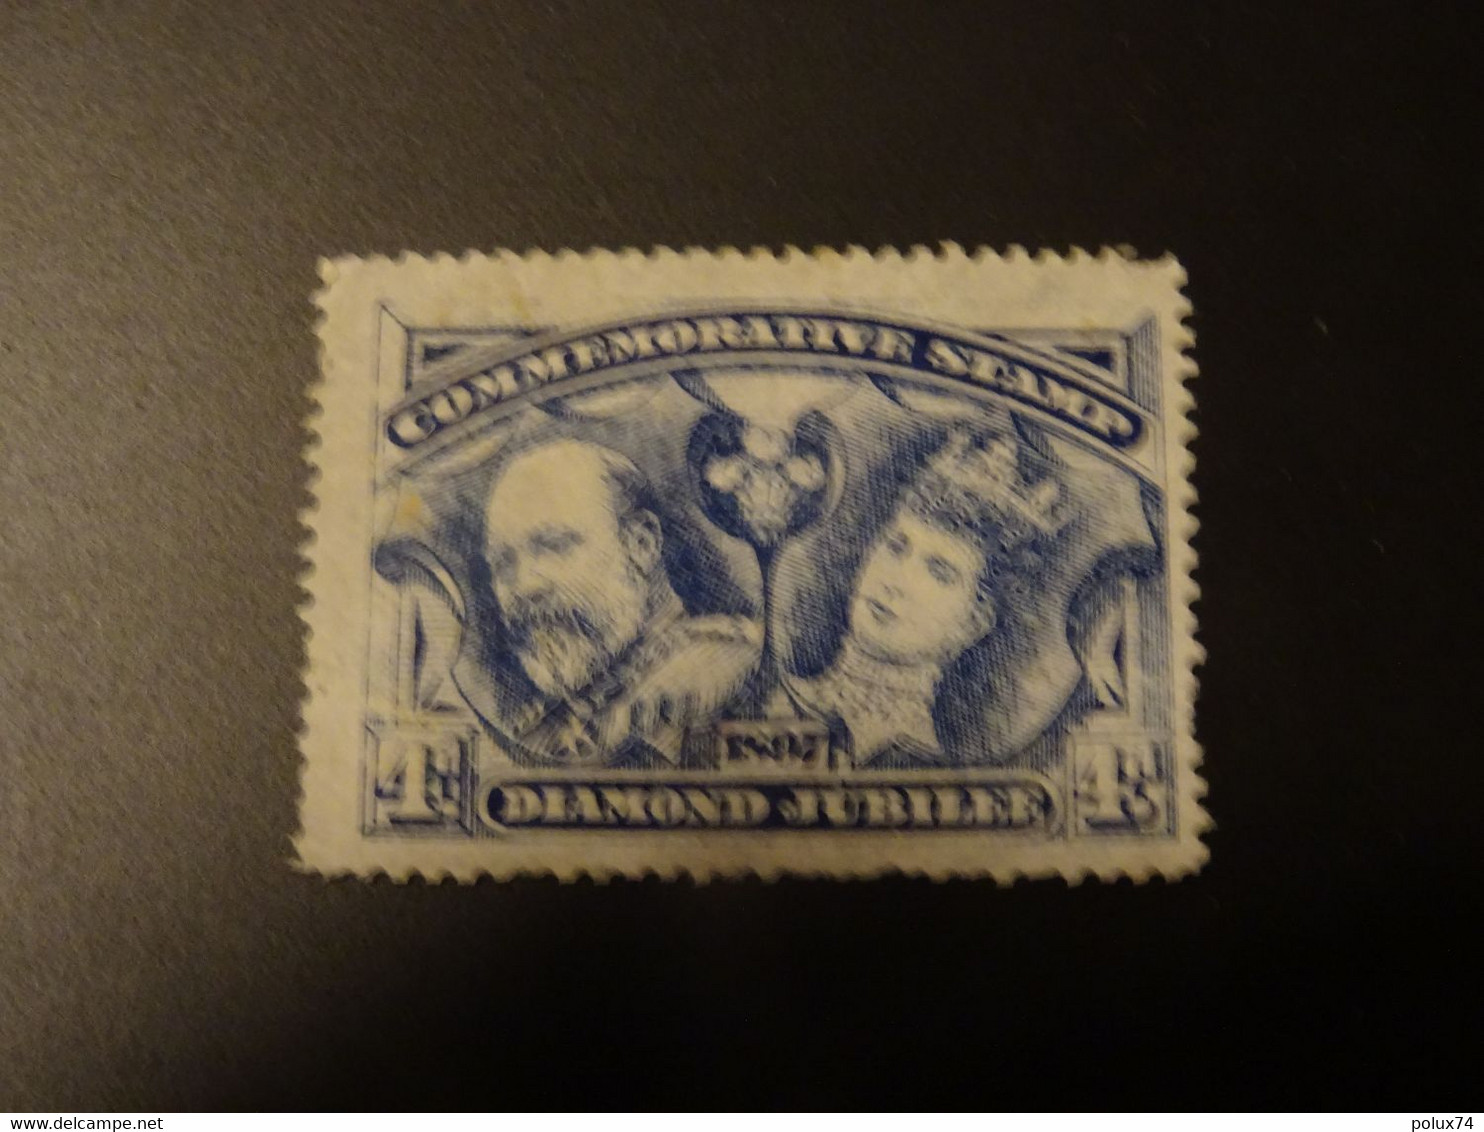 Vignette  1897 Commemorative Stamp - Non Classificati